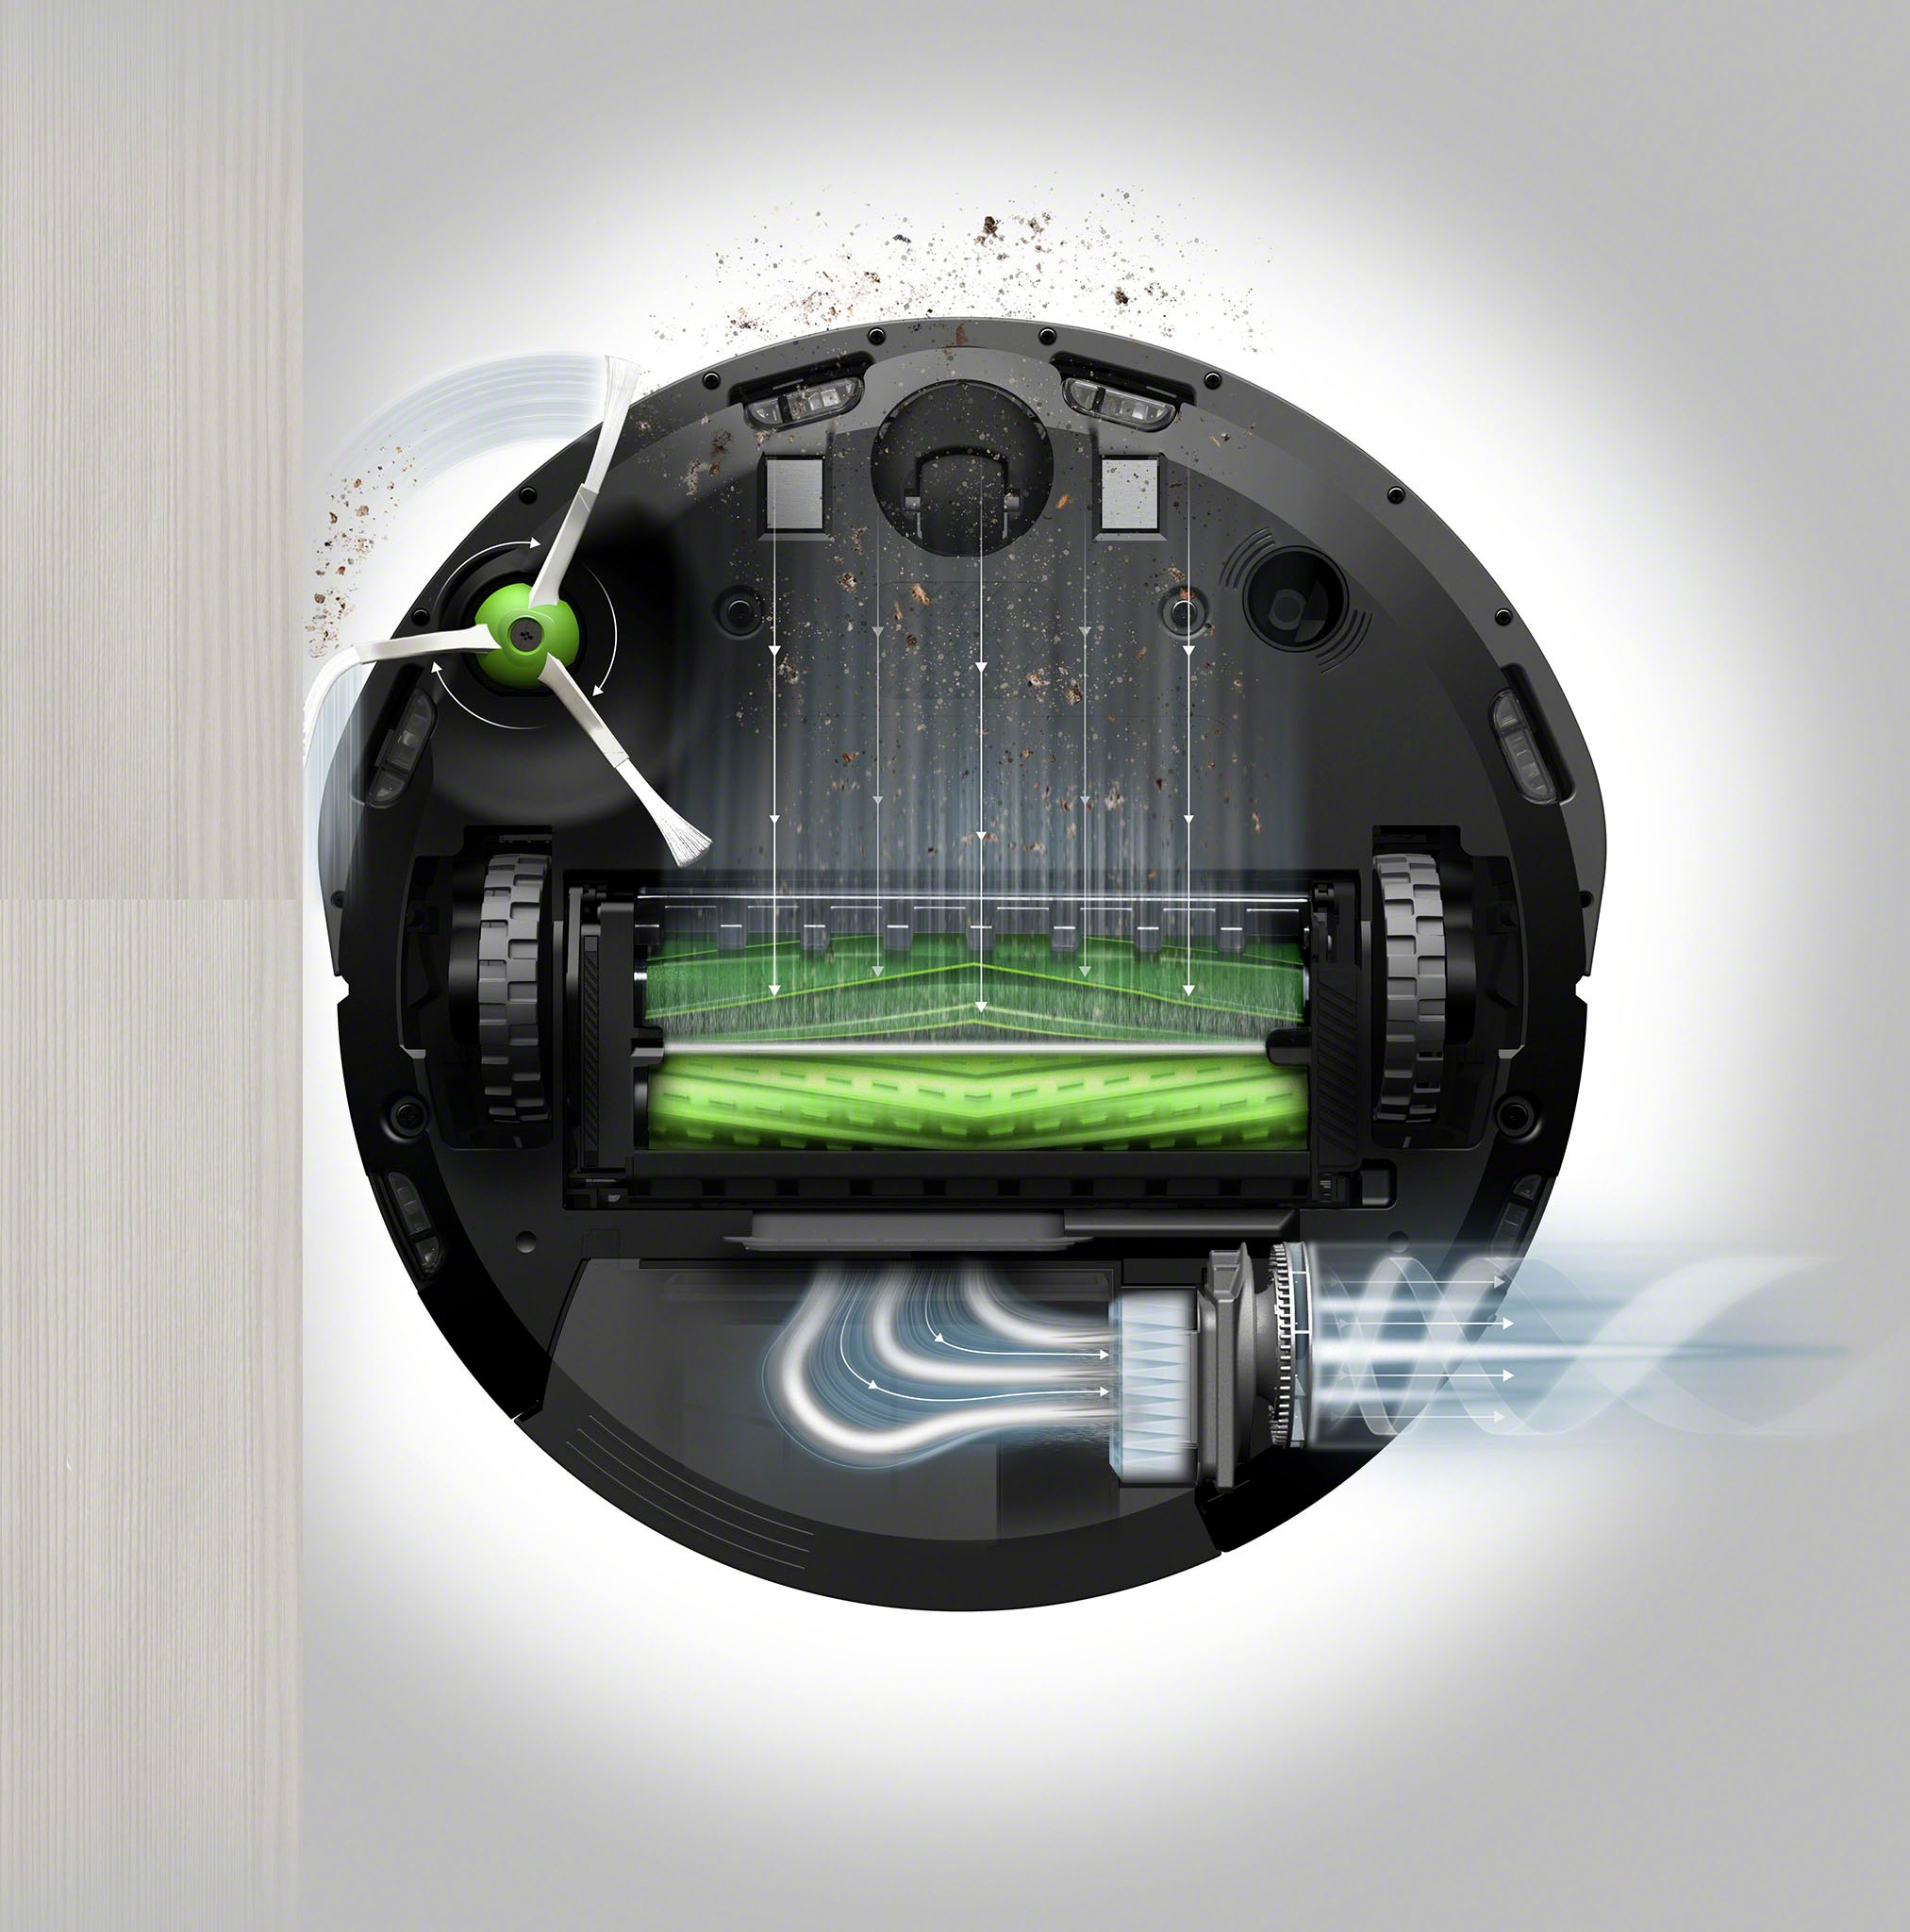 iRobot Saugroboter »Roomba i7 (i7158)«, App-/Sprachsteuerung, Einzelraumkaritierung